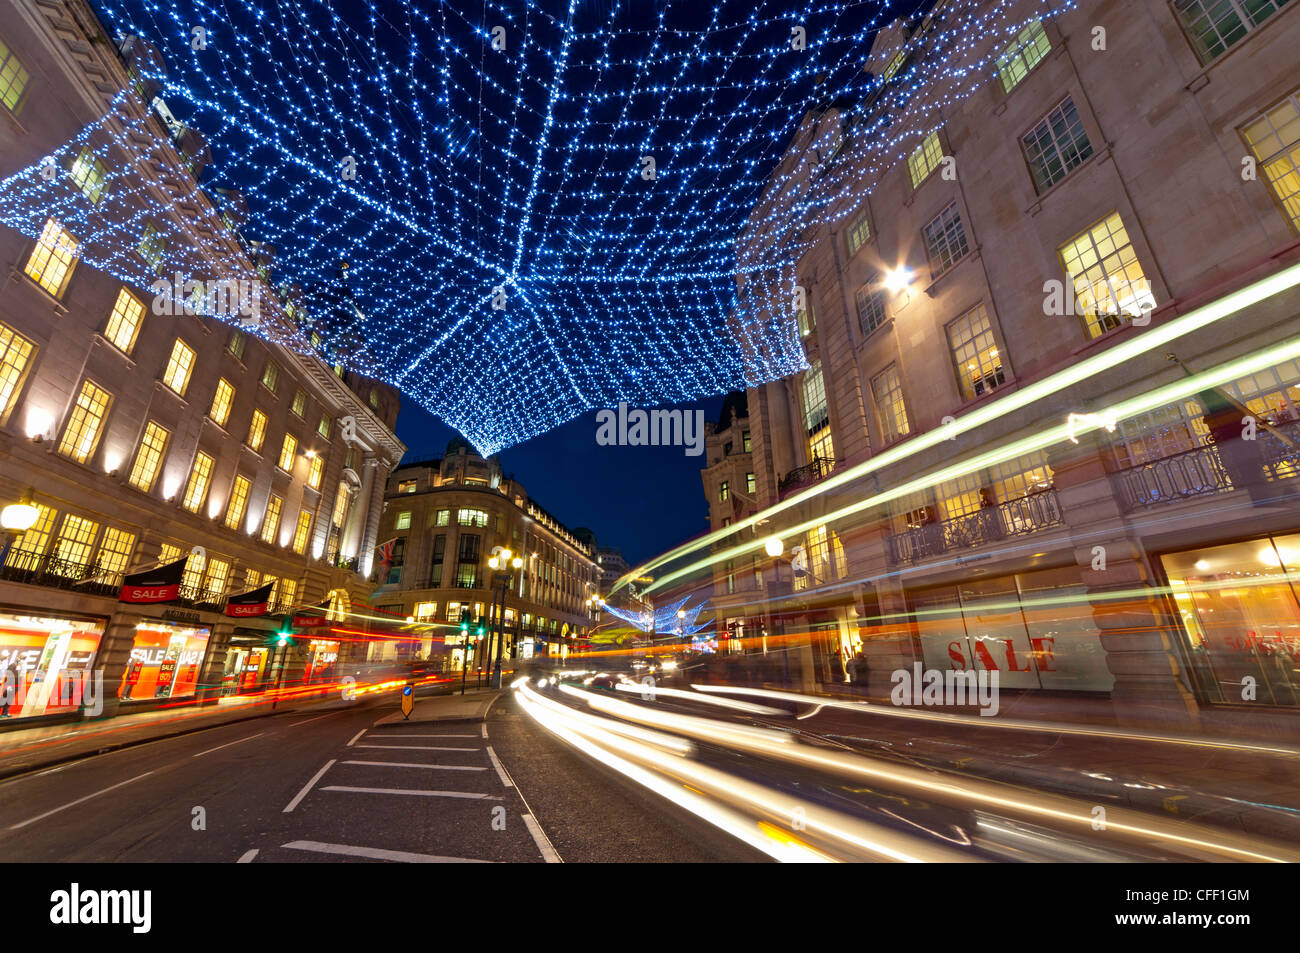 Les lumières de Noël, Regents Street, Londres, Angleterre, Royaume-Uni, Europe Banque D'Images